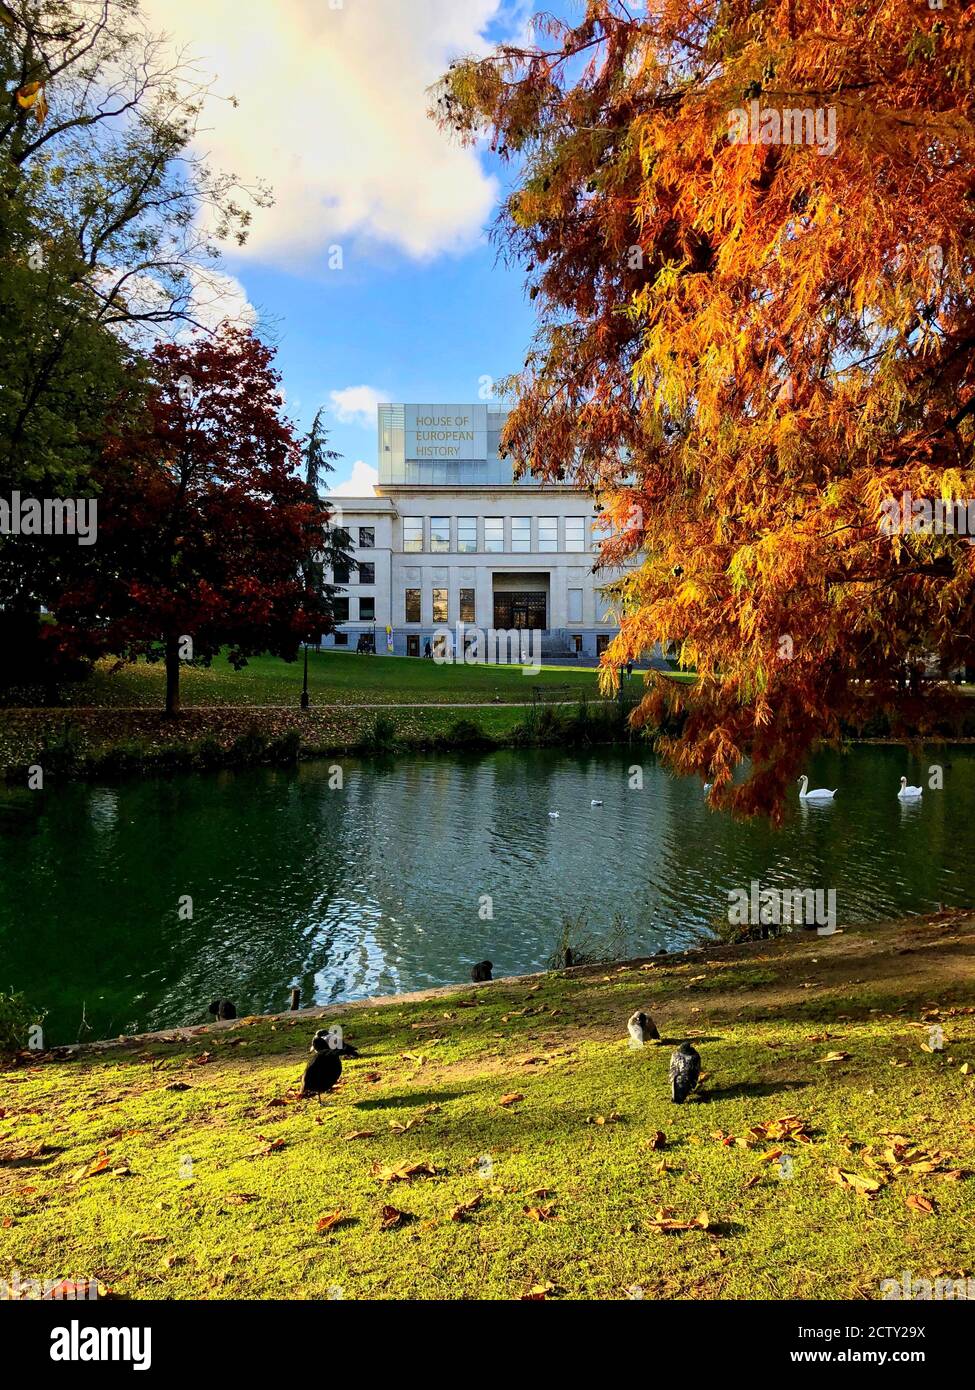 Les vibes d'automne dans le parc Leopold à Bruxelles avec arbre coloré, oiseaux aquatiques et extérieur de la maison d'histoire européenne pendant la journée ensoleillée. Banque D'Images